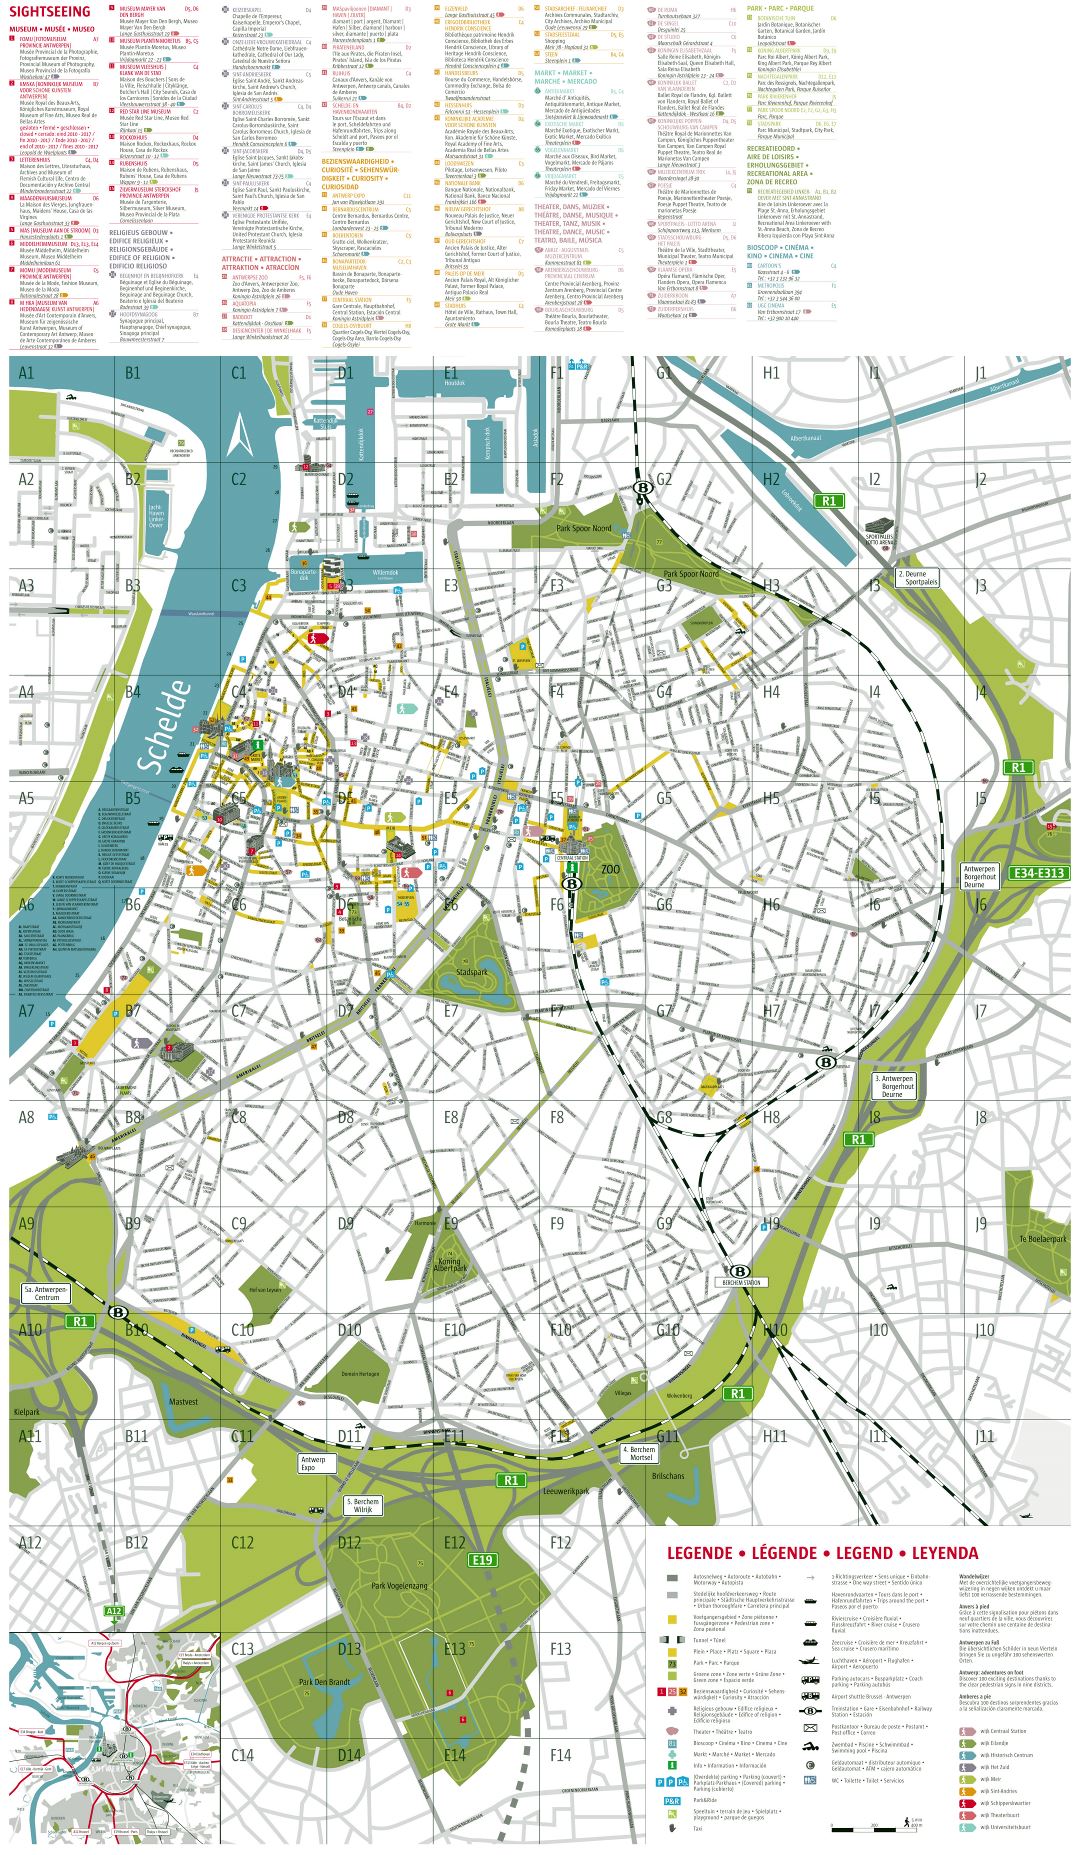 Ampliación de la escala del mapa de la ciudad turística detallada Antwerpen